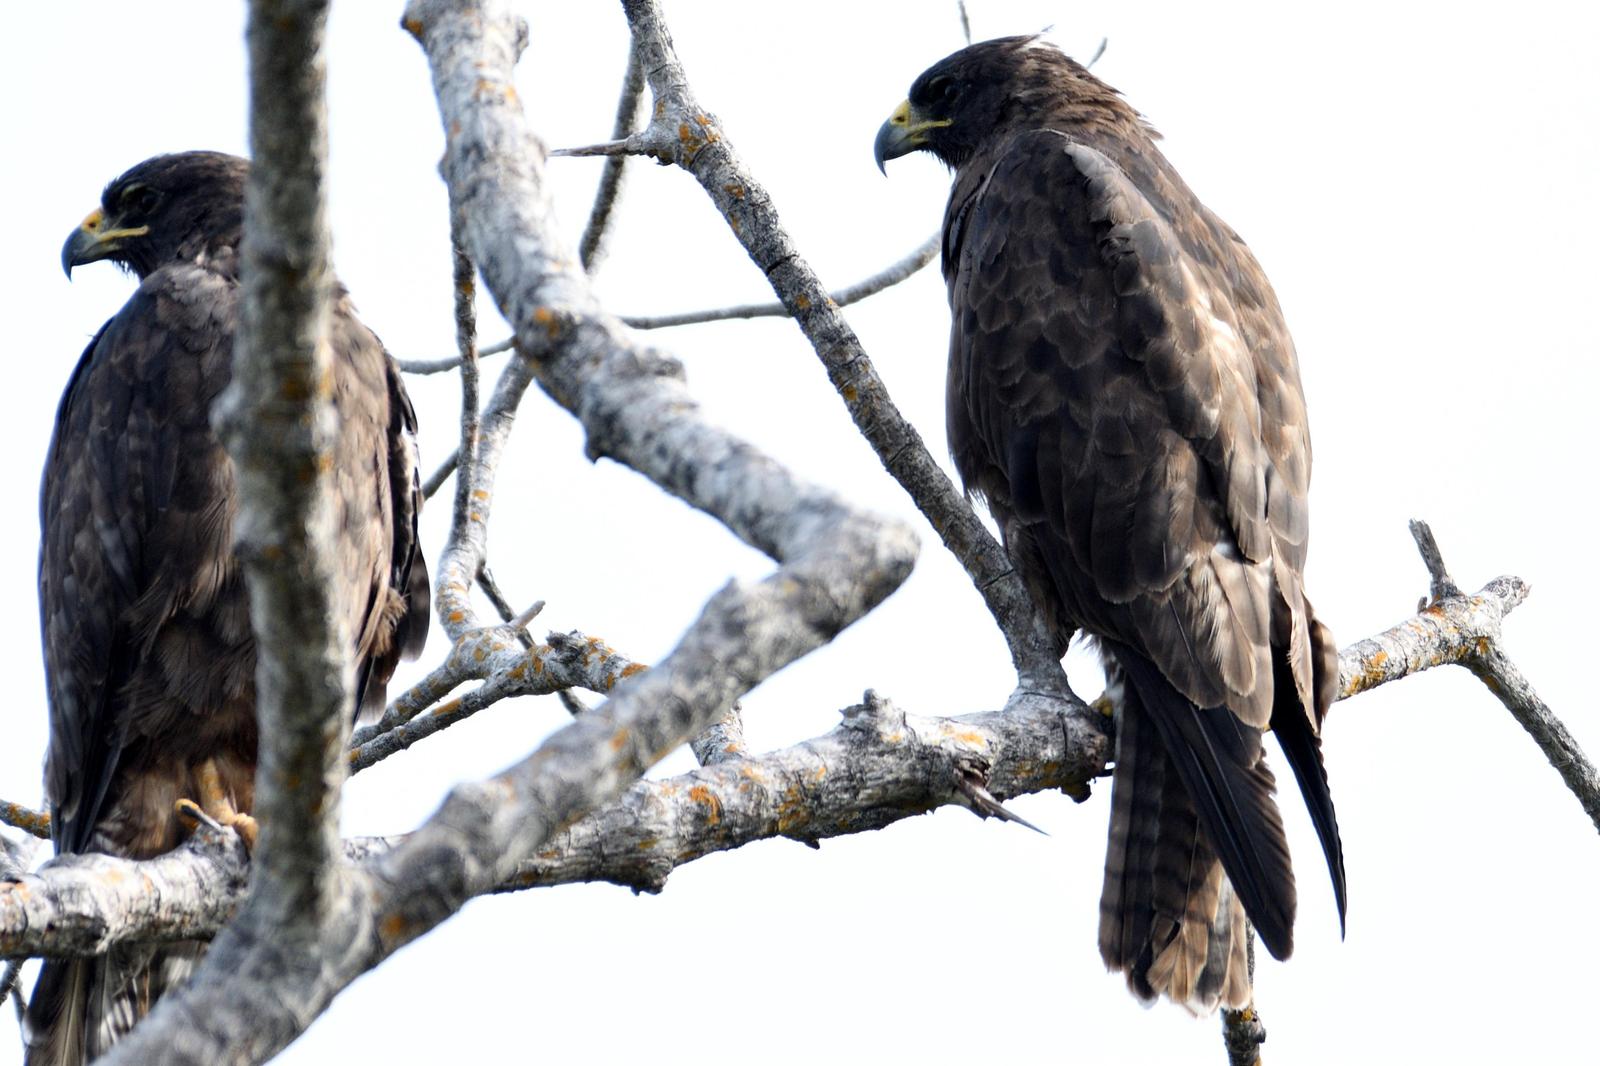 Galapagos Hawk Photo by Ann Doty